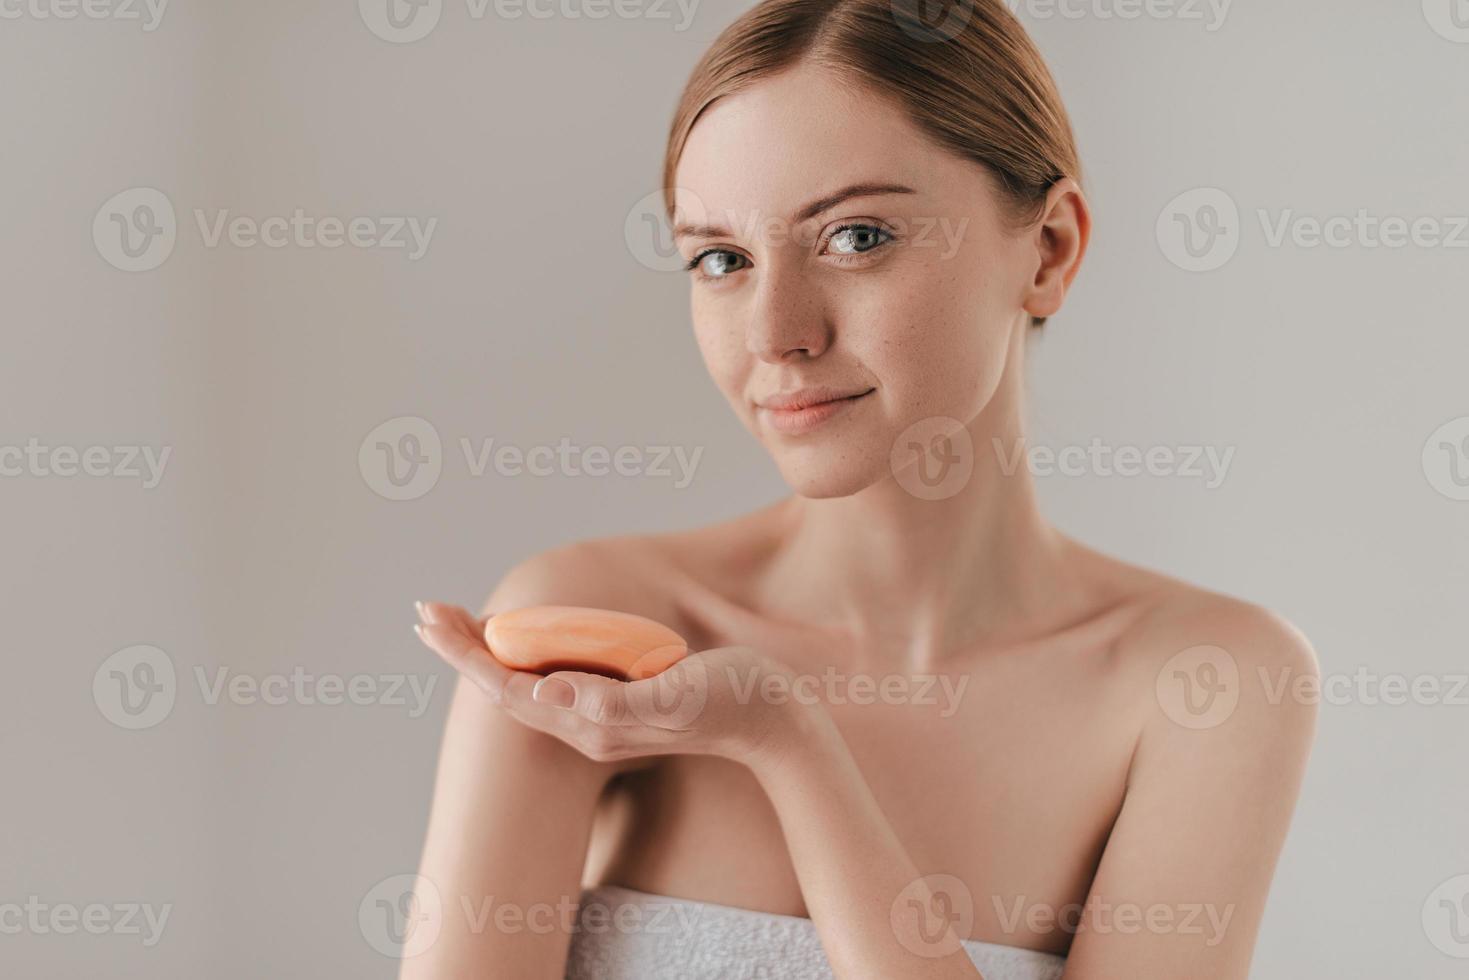 perfekte Körperpflege. Schöne junge Frau mit Sommersprossen im Gesicht, die Seife hält und in die Kamera schaut, während sie vor dem Hintergrund steht foto